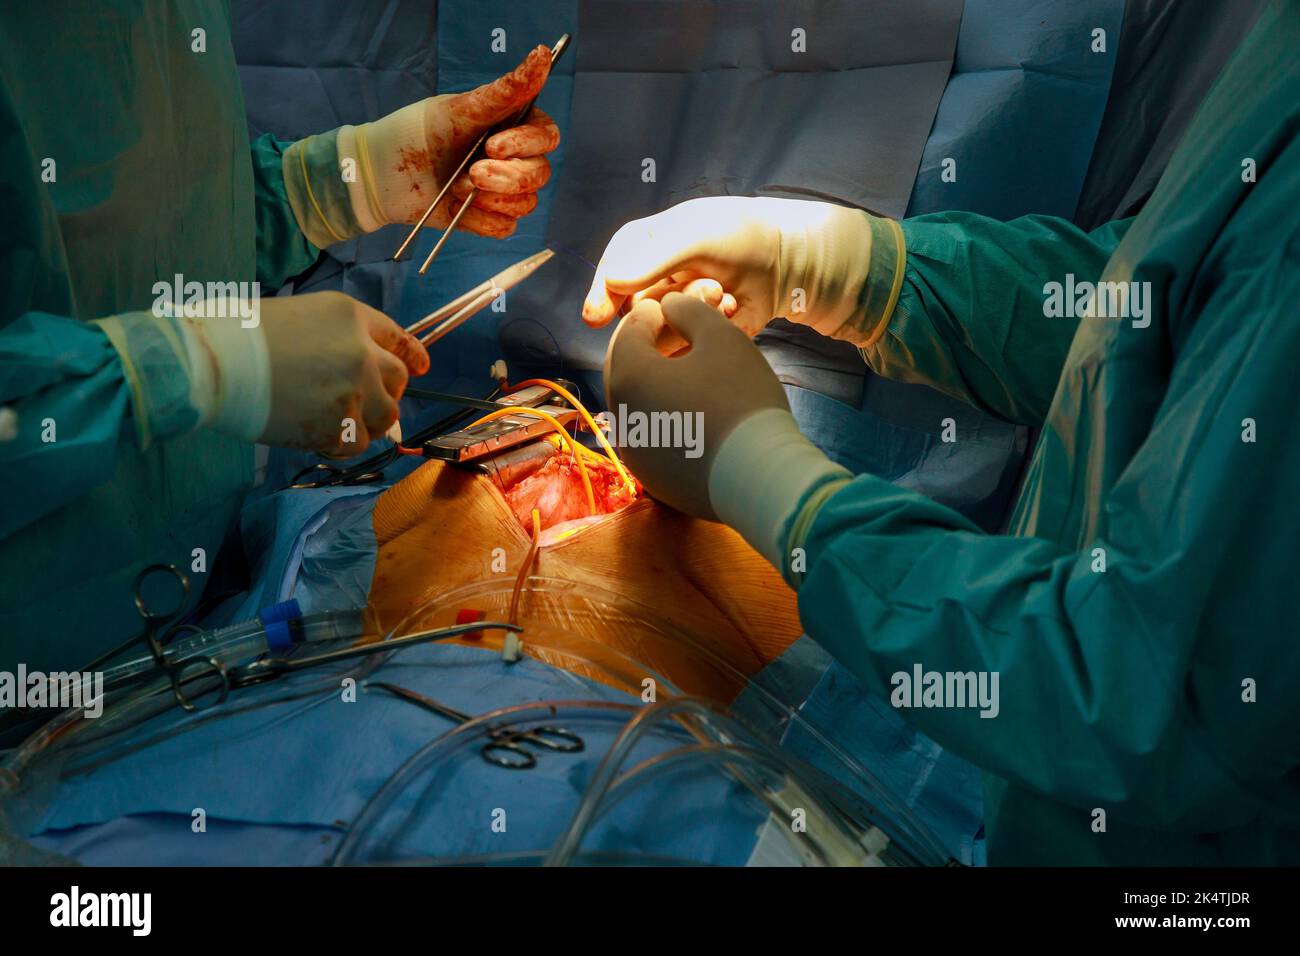 Intervento chirurgico a cuore aperto a causa di un malfunzionamento della valvola cardiaca, viene eseguita la sostituzione della valvola Foto Stock